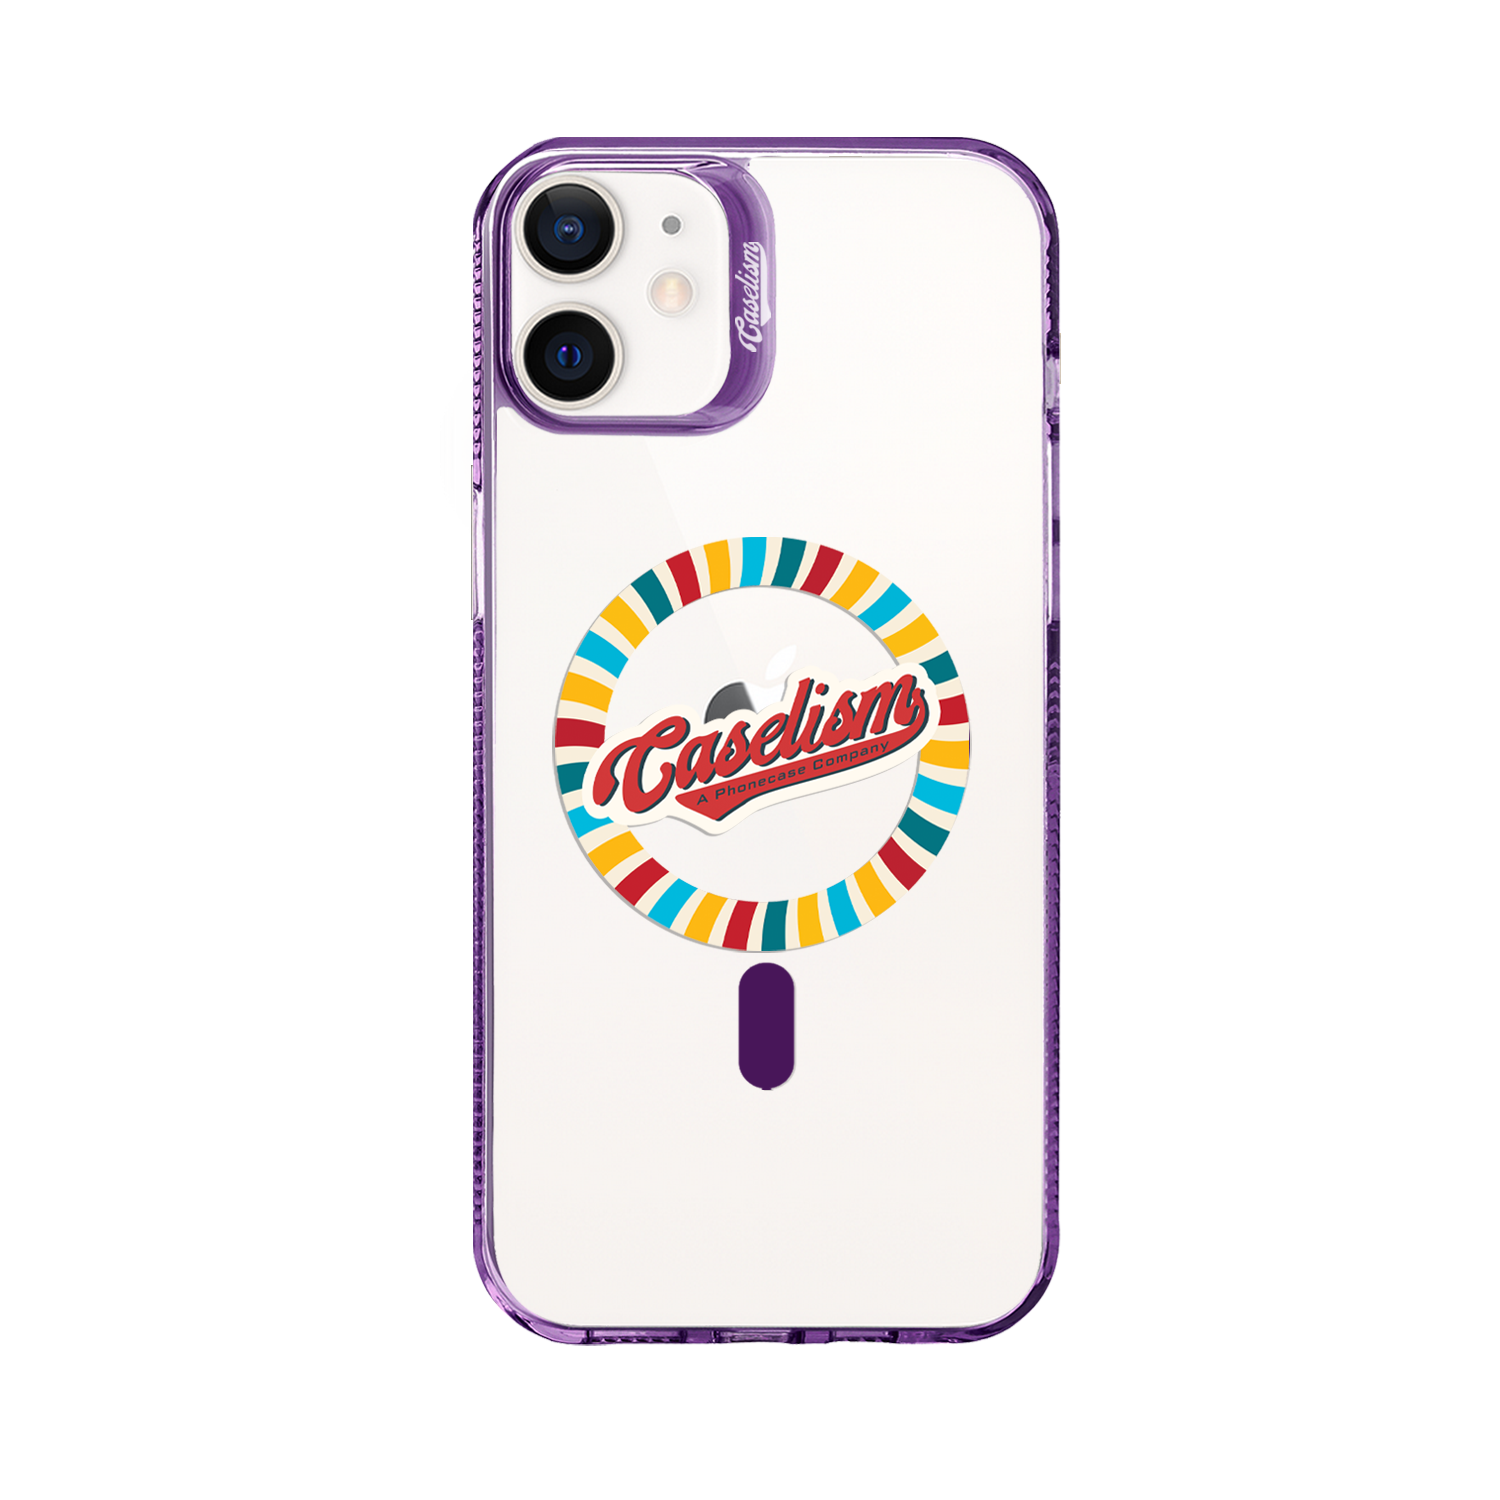 CASE006 - ColorLite Case for iPhone